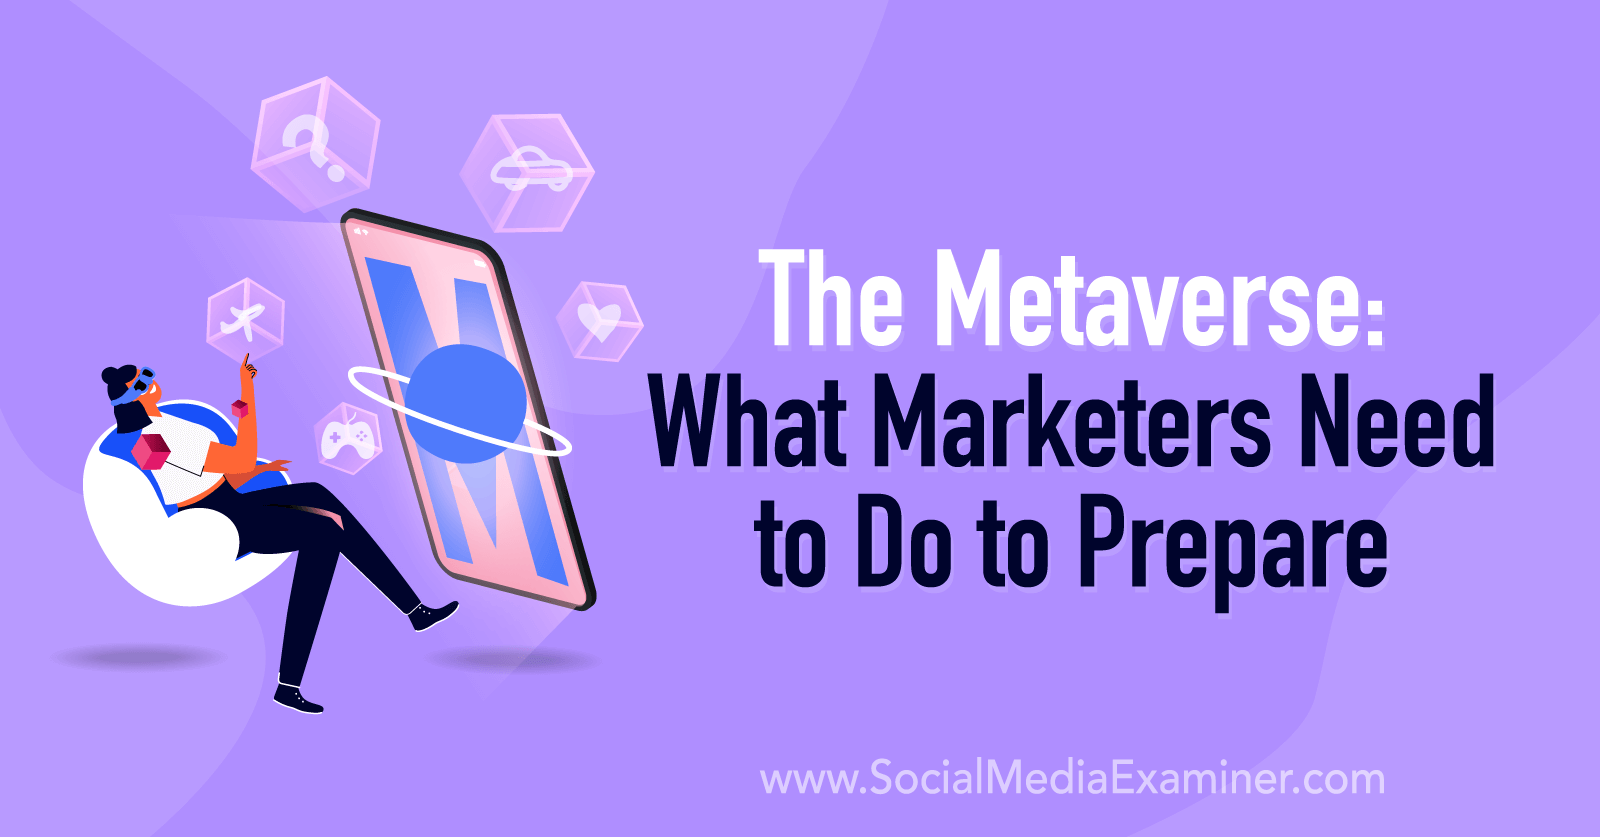 Como funciona o marketing no metaverso? Descubra agora e prepare-se!